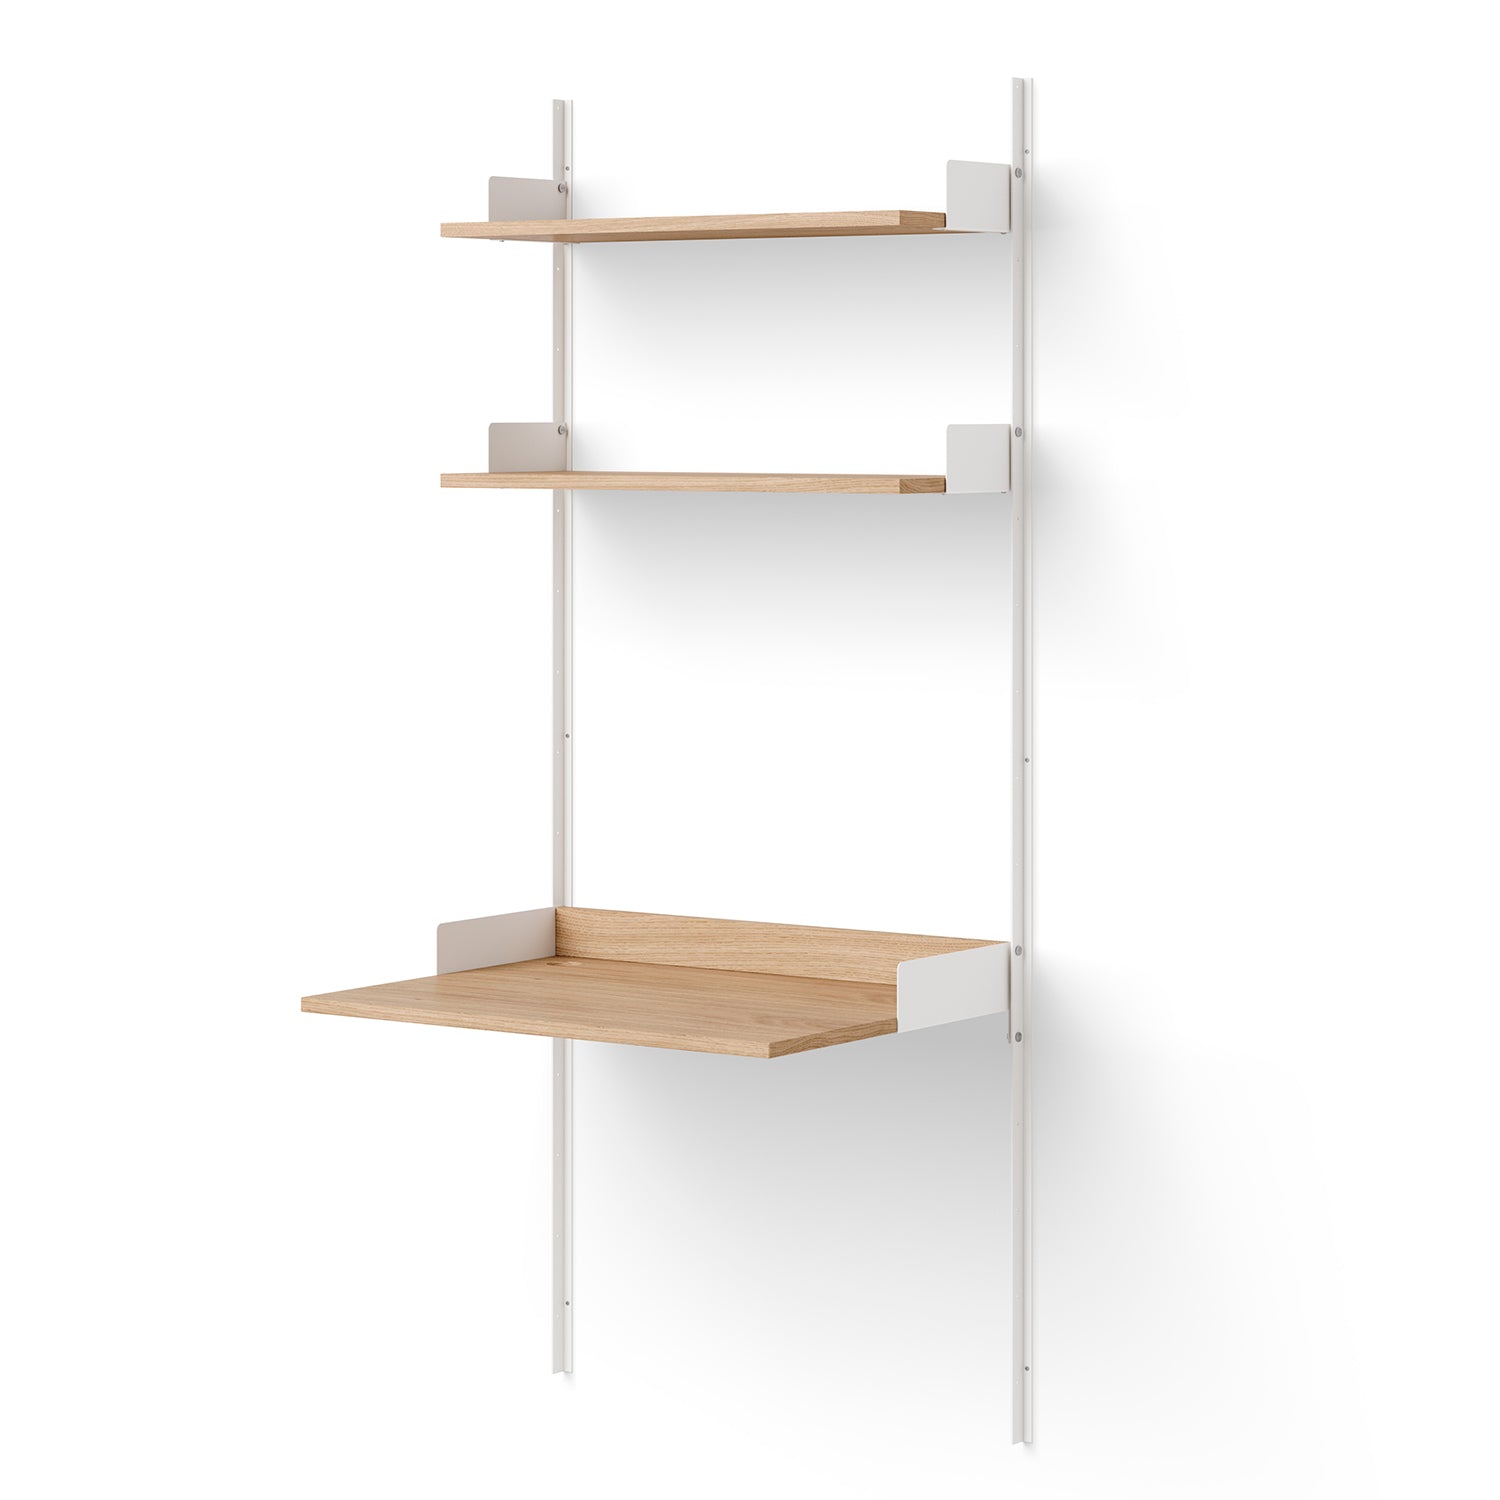 Study Shelf - The Design Choice